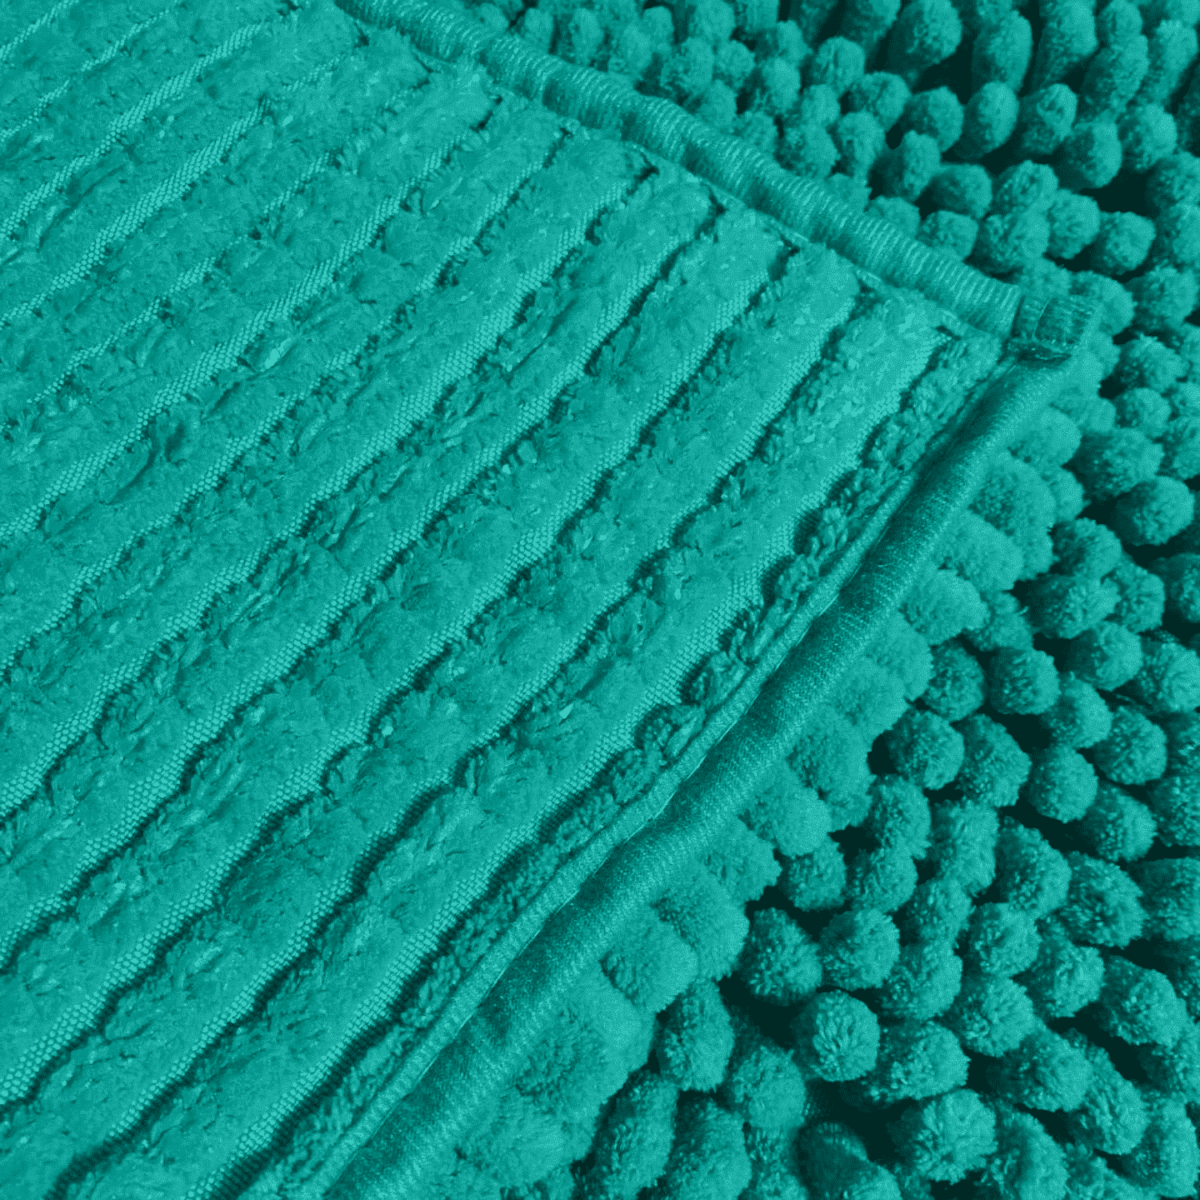 Dettaglio Tappeto-da-bagno-passatello-shaggy-verde-acqua-poliestere-microfibra-50x80cm-60x120cm-tinta-unita